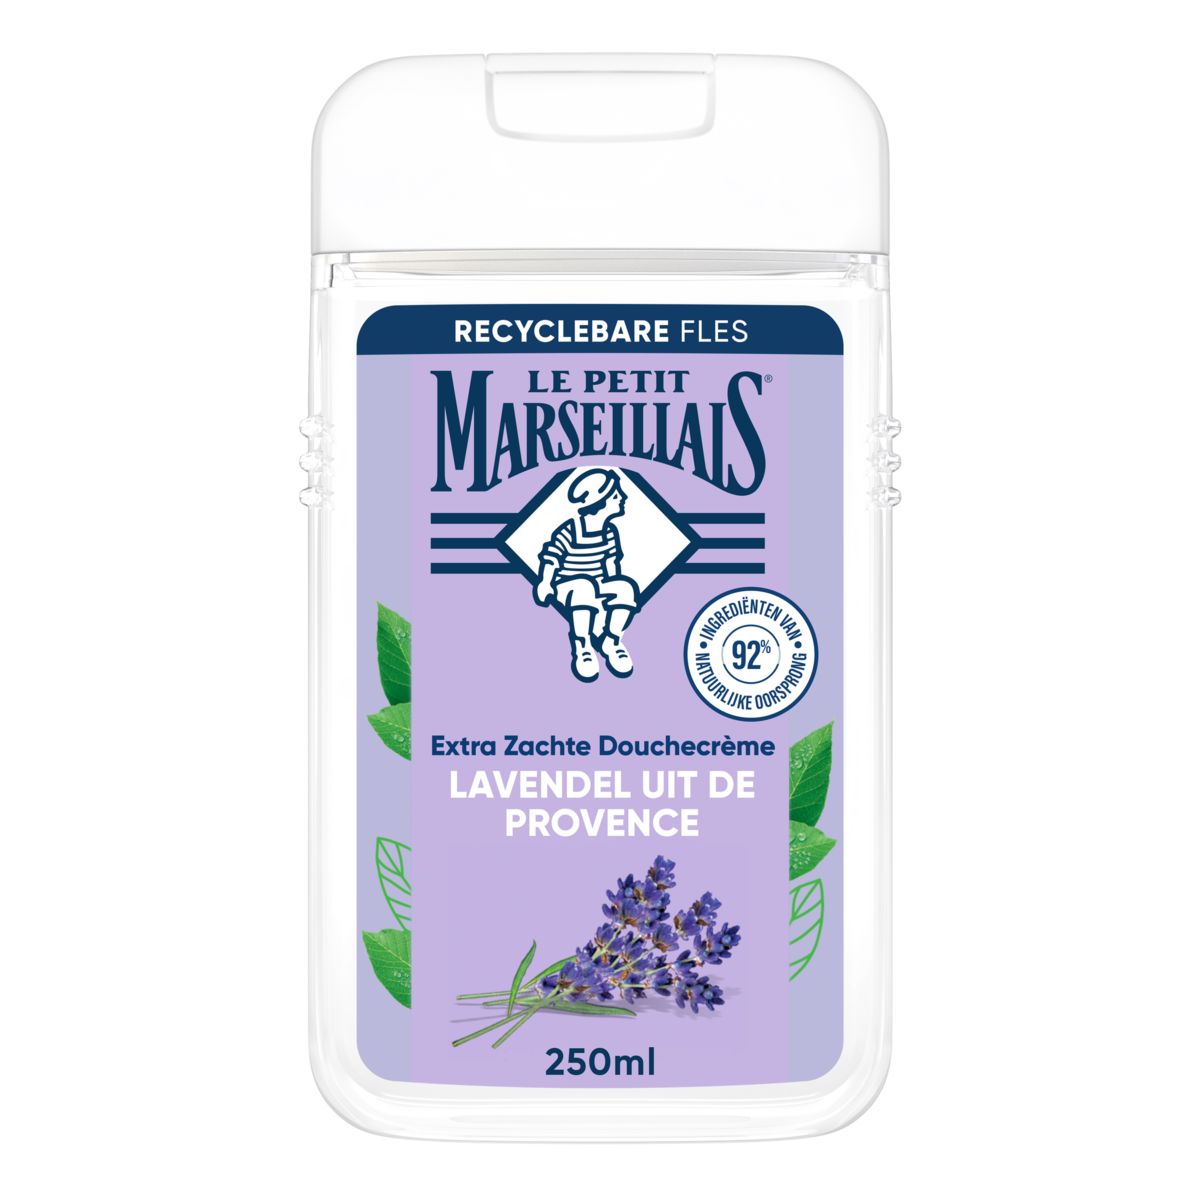 Le Petit Marseillais Lavendel Provence Extra Zachte Douchecrème 250 ml